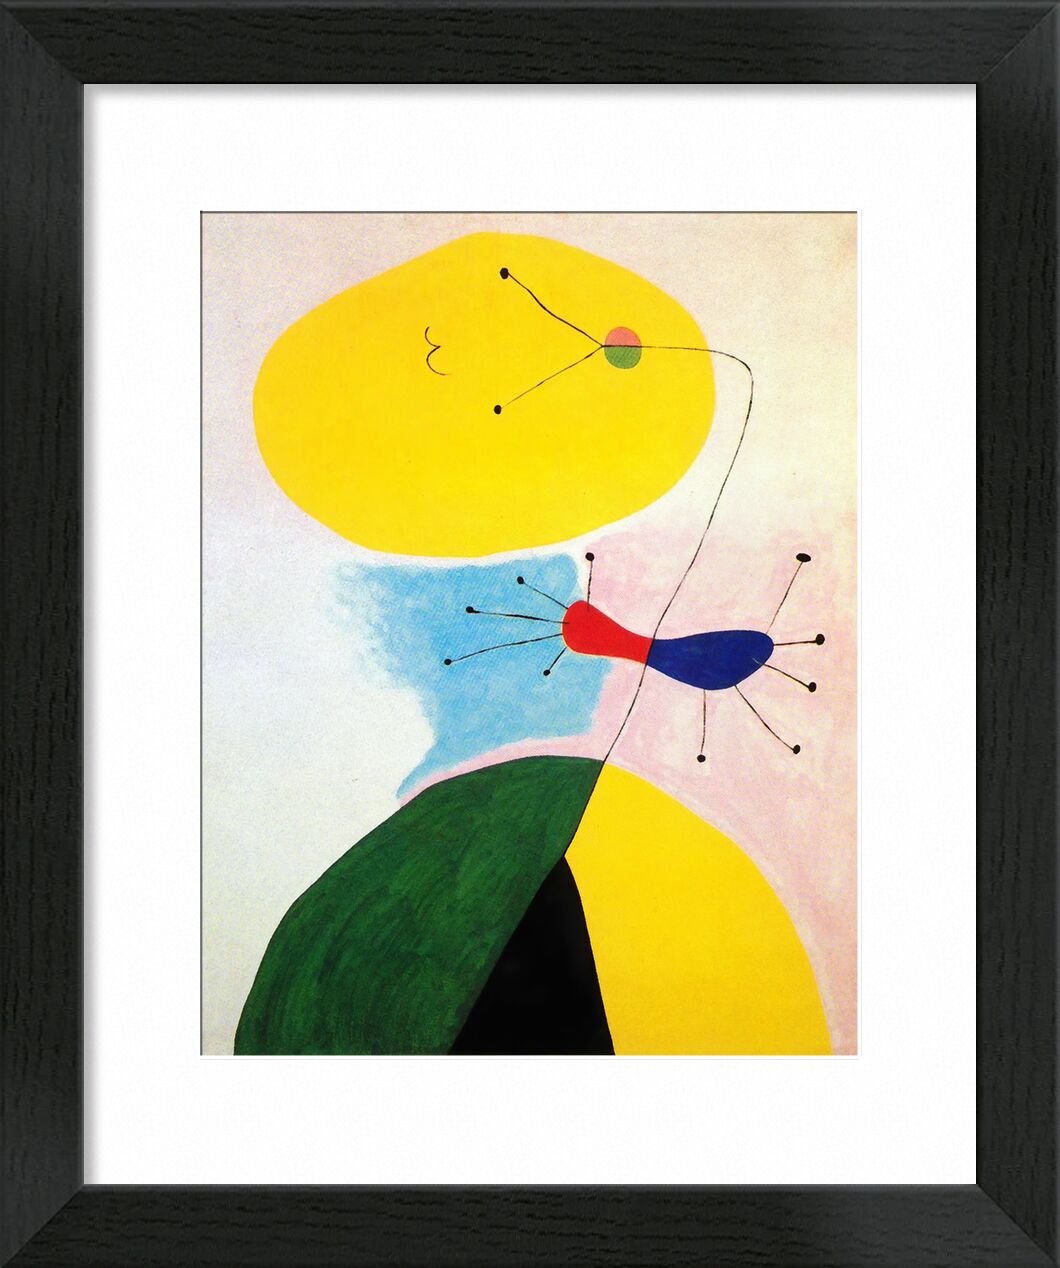 Portrait - Joan Miró von Bildende Kunst, Prodi Art, Joan Miró, Porträt, Zeichnung, abstrakt, Farben